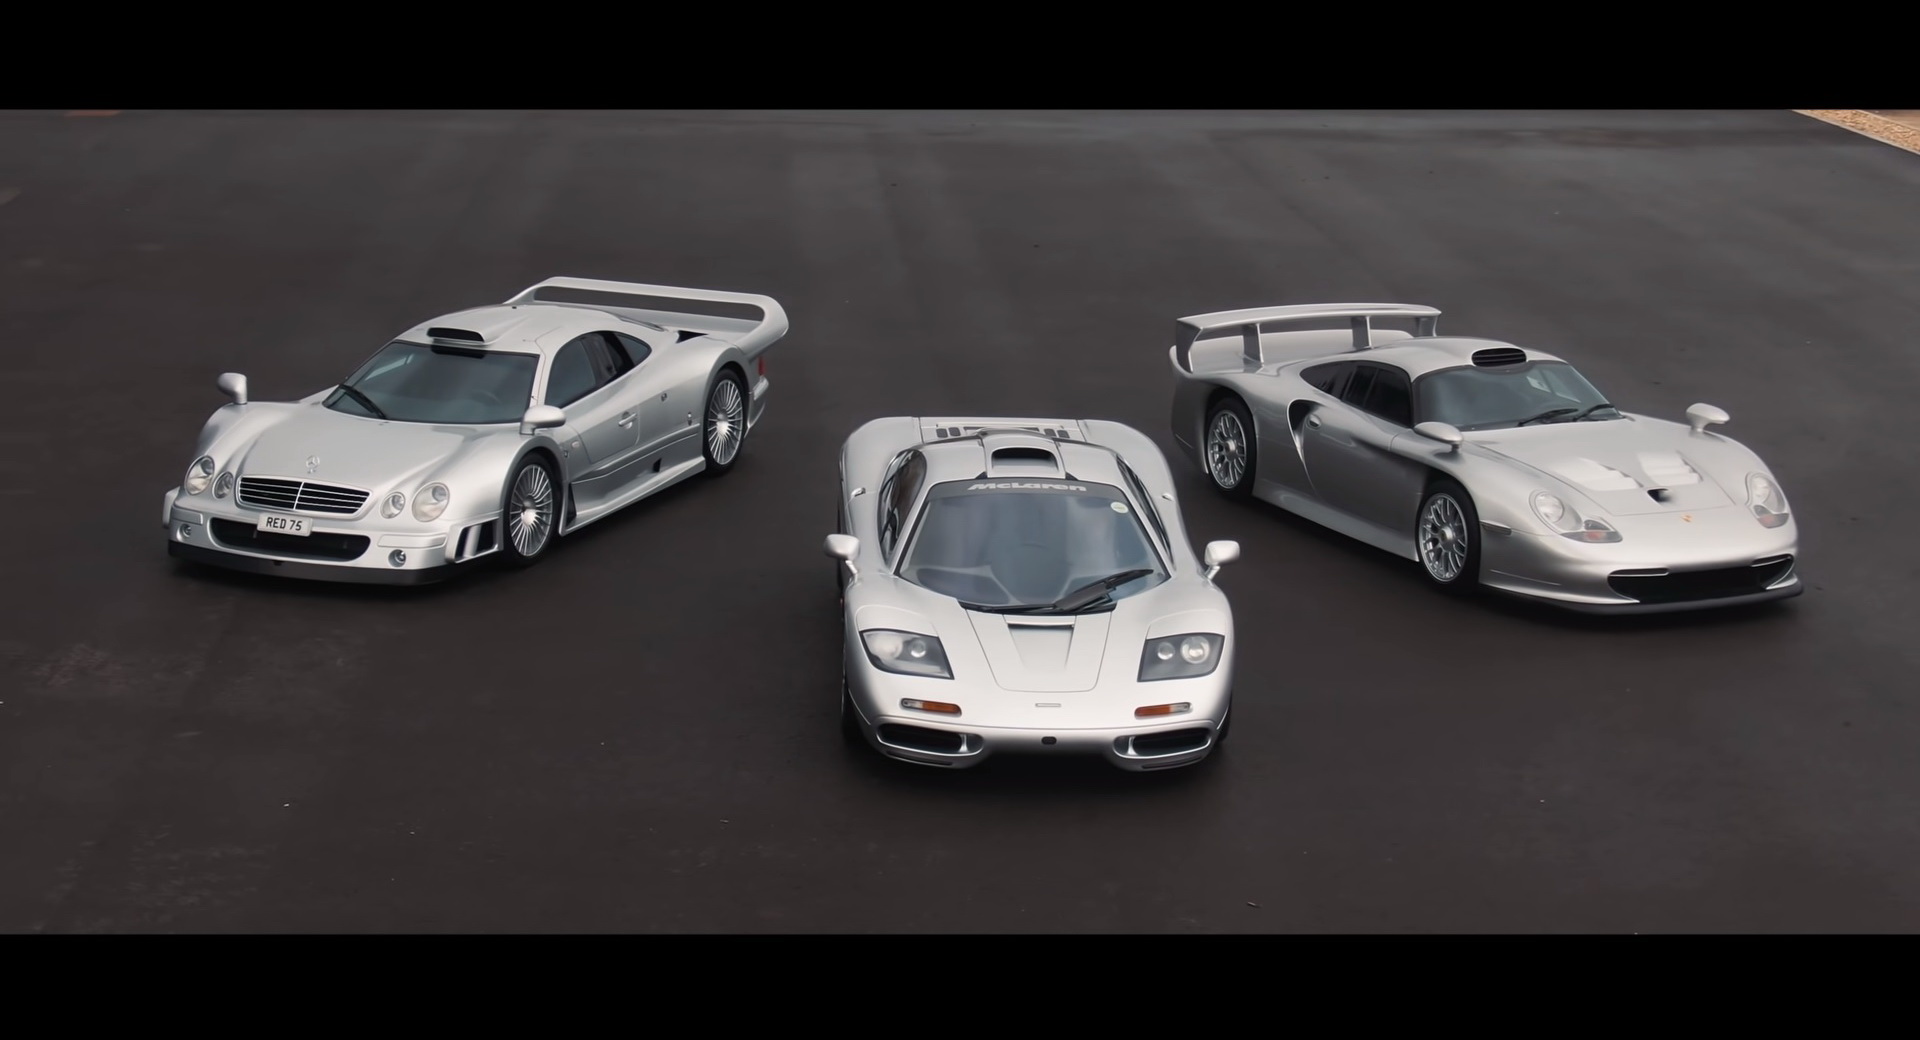 McLaren F1, Porsche 911 GT1 And Mercedes CLK GTR: Part 1 Of The